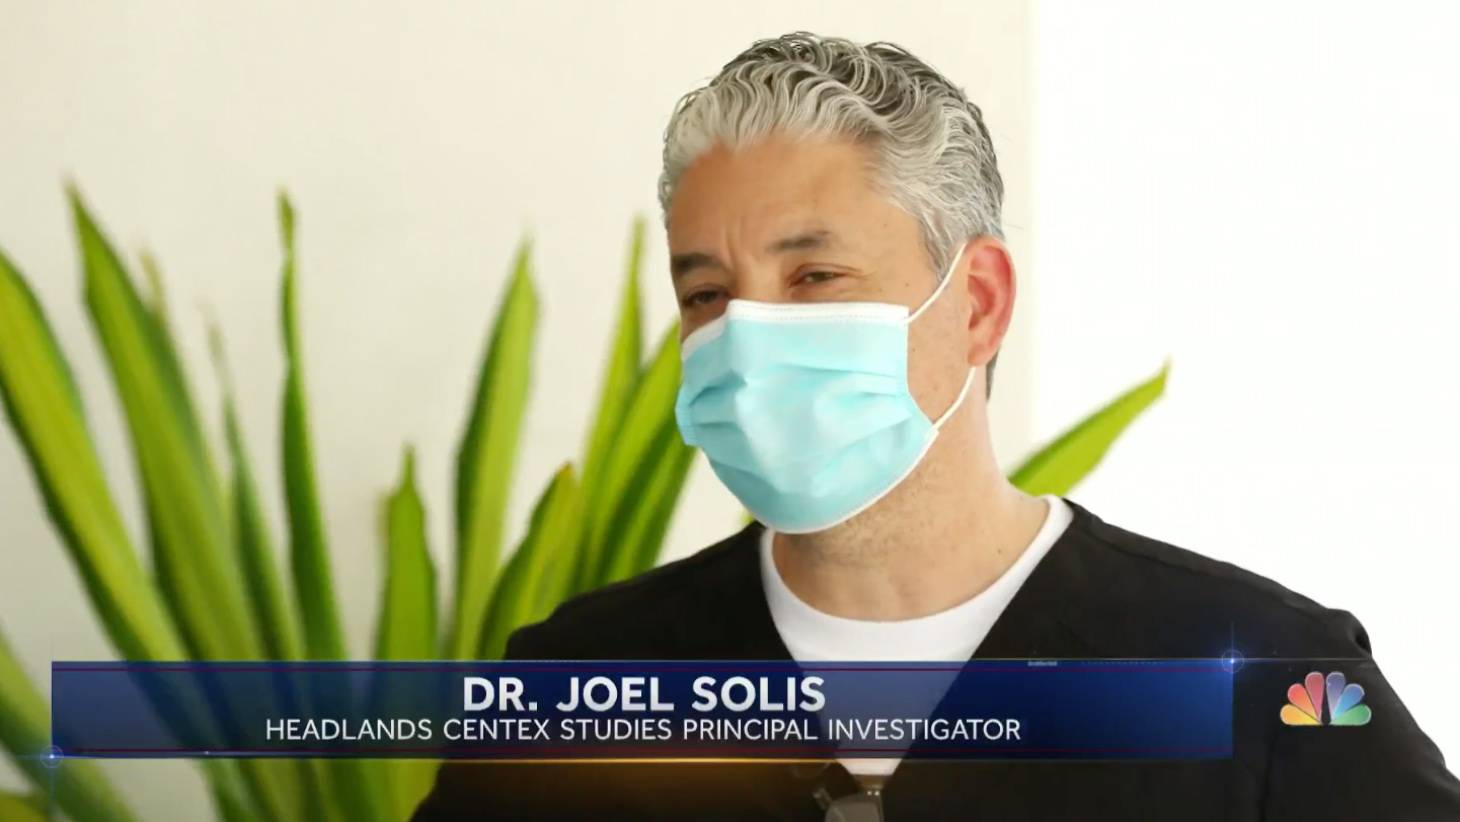 Dr. Joel Solis